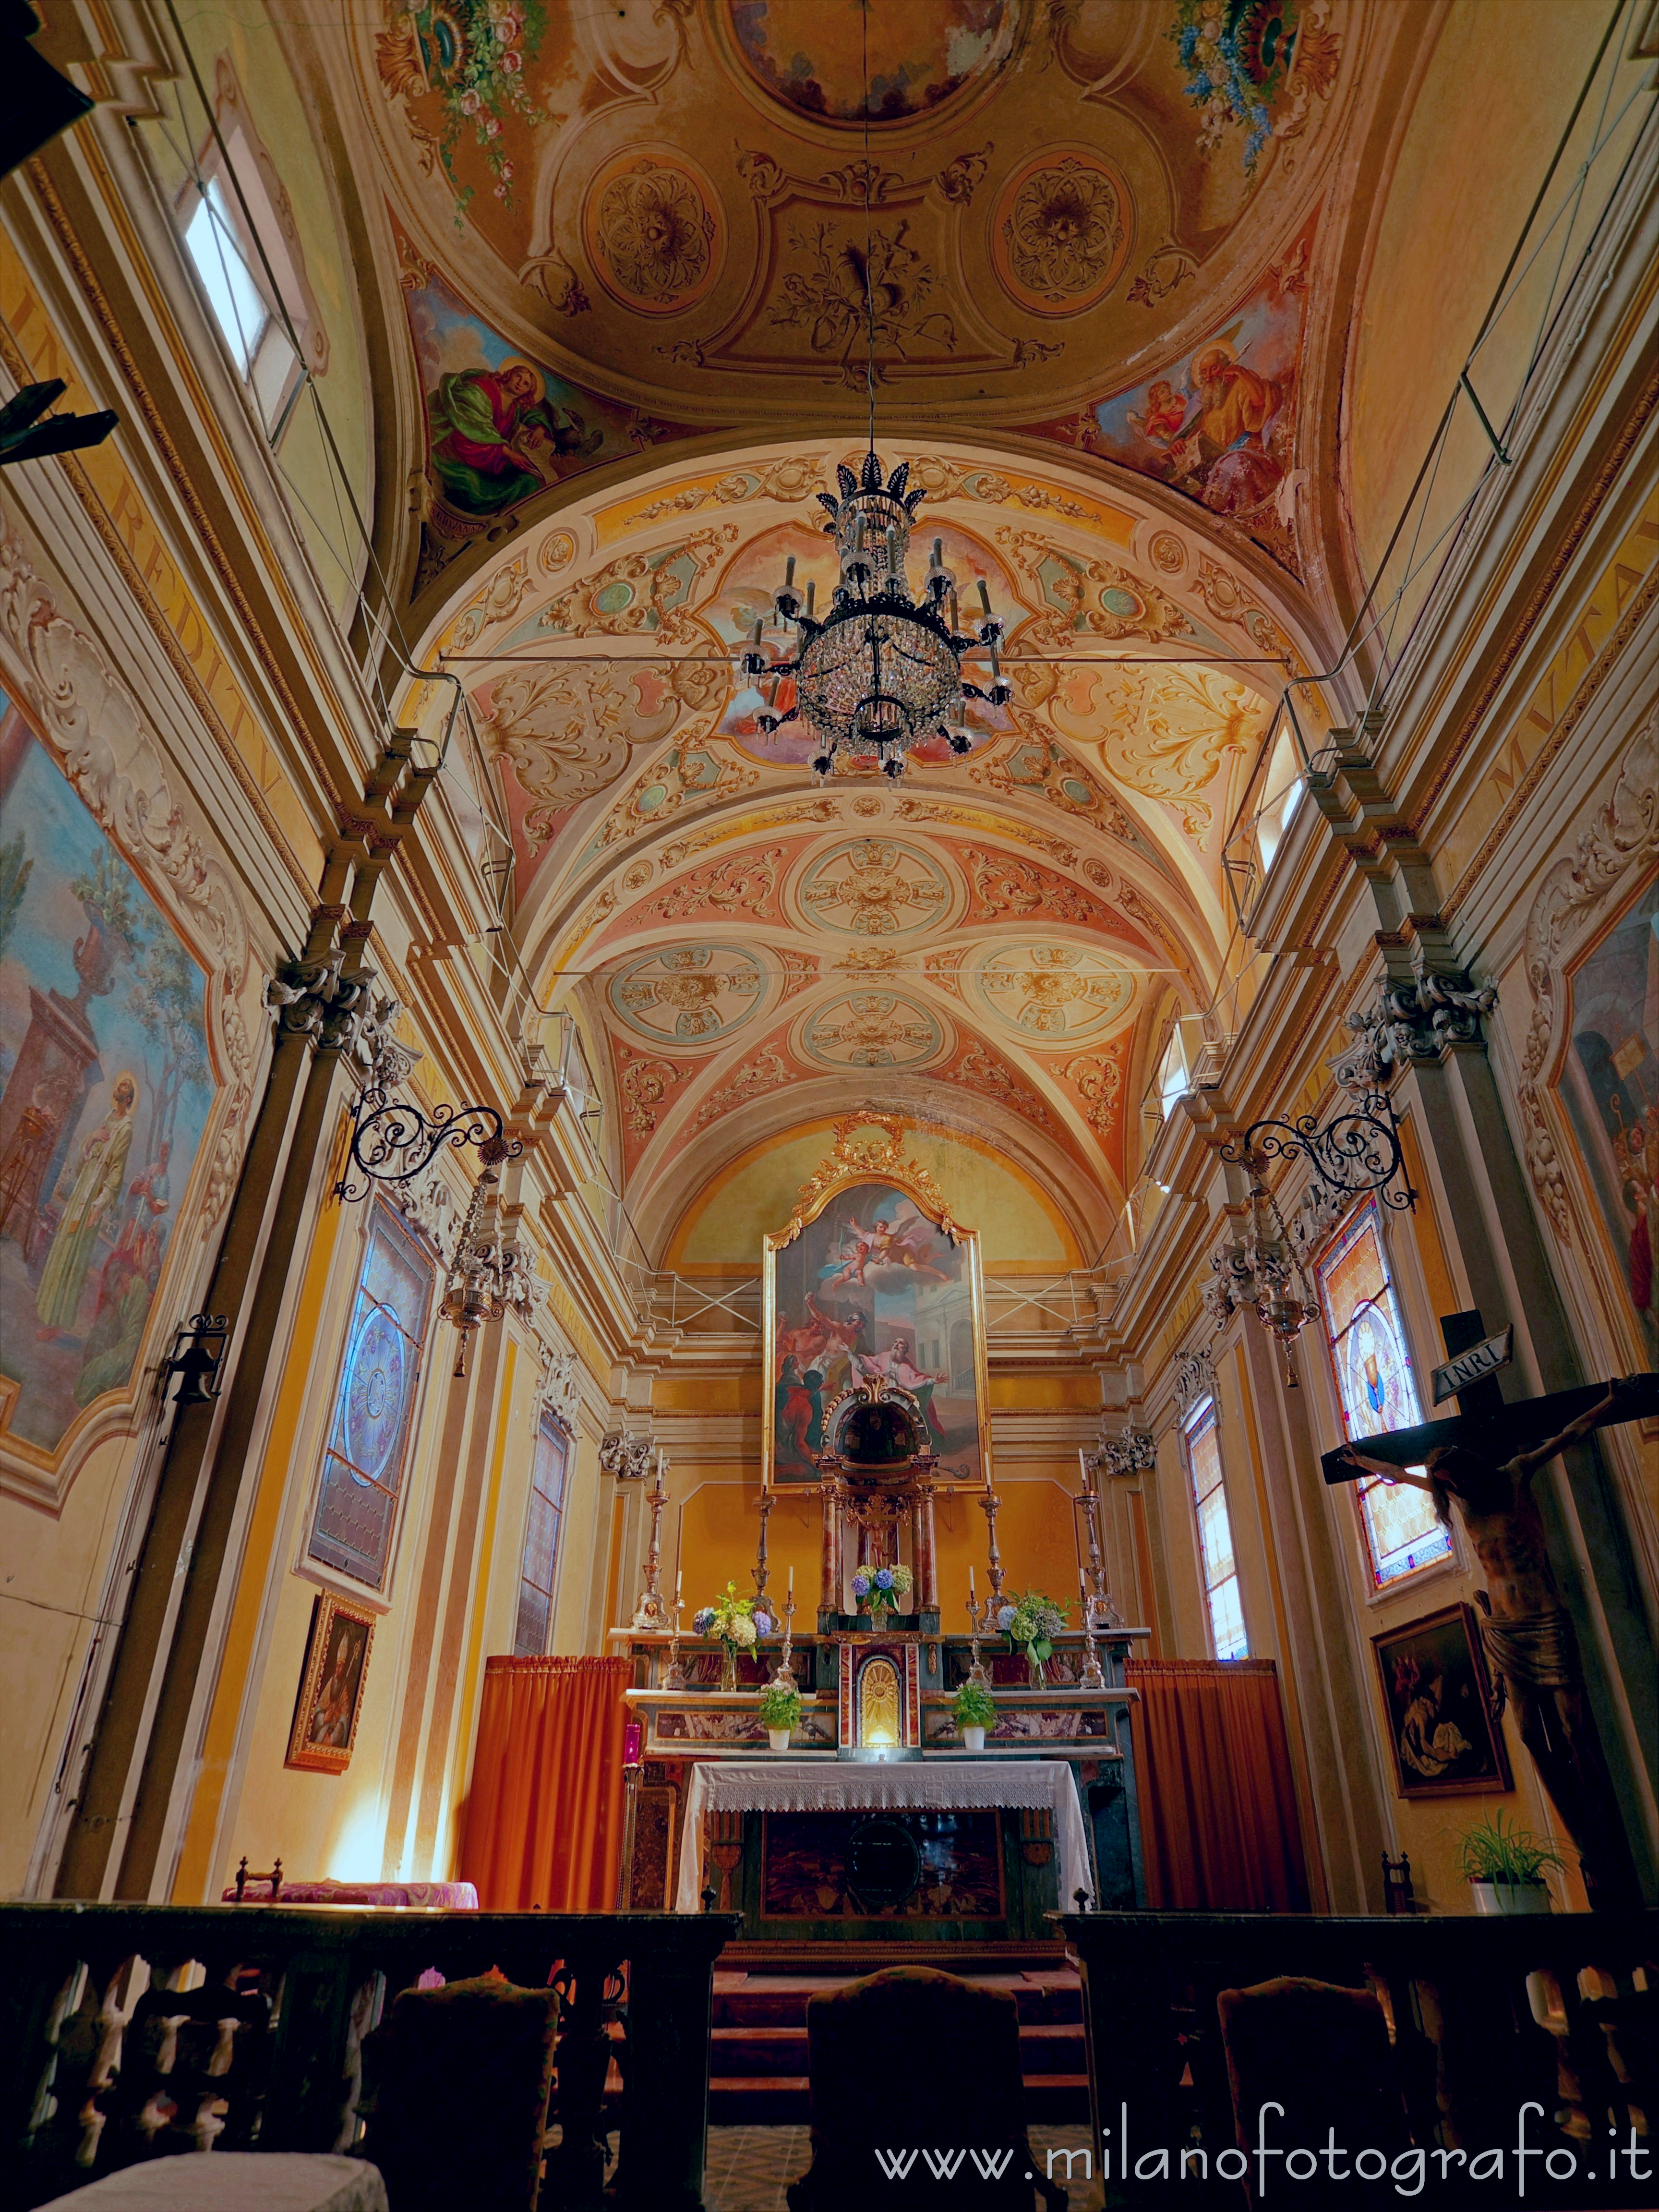 Muzzano (Biella, Italy): Presbytery and apse of the Church of Sant'Eusebio - Muzzano (Biella, Italy)